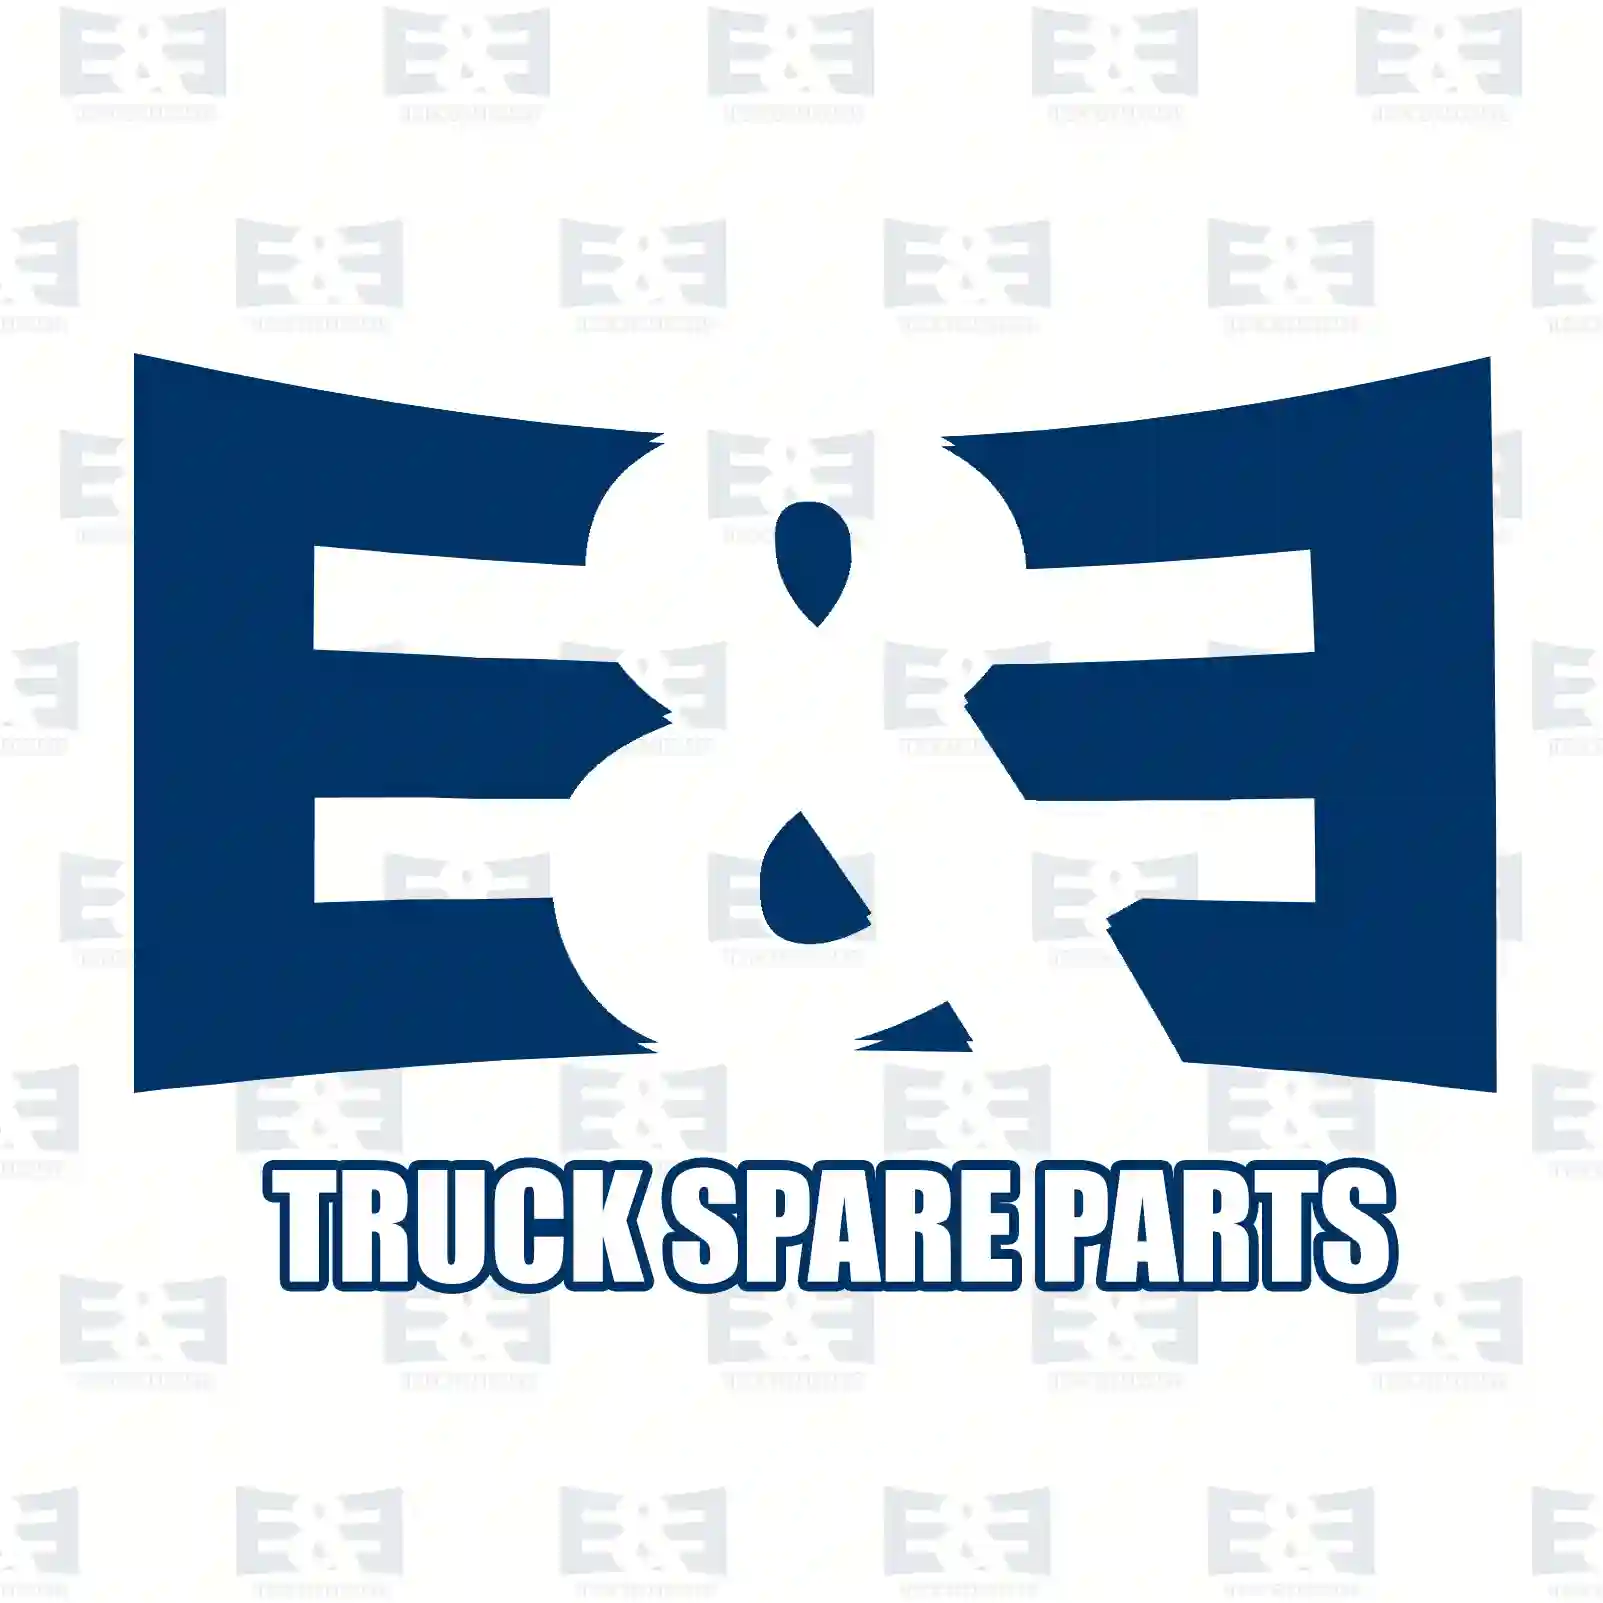 Headlamp, left, 2E2297872, 1606927980, 1368641080, 1606927980 ||  2E2297872 E&E Truck Spare Parts | Truck Spare Parts, Auotomotive Spare Parts Headlamp, left, 2E2297872, 1606927980, 1368641080, 1606927980 ||  2E2297872 E&E Truck Spare Parts | Truck Spare Parts, Auotomotive Spare Parts